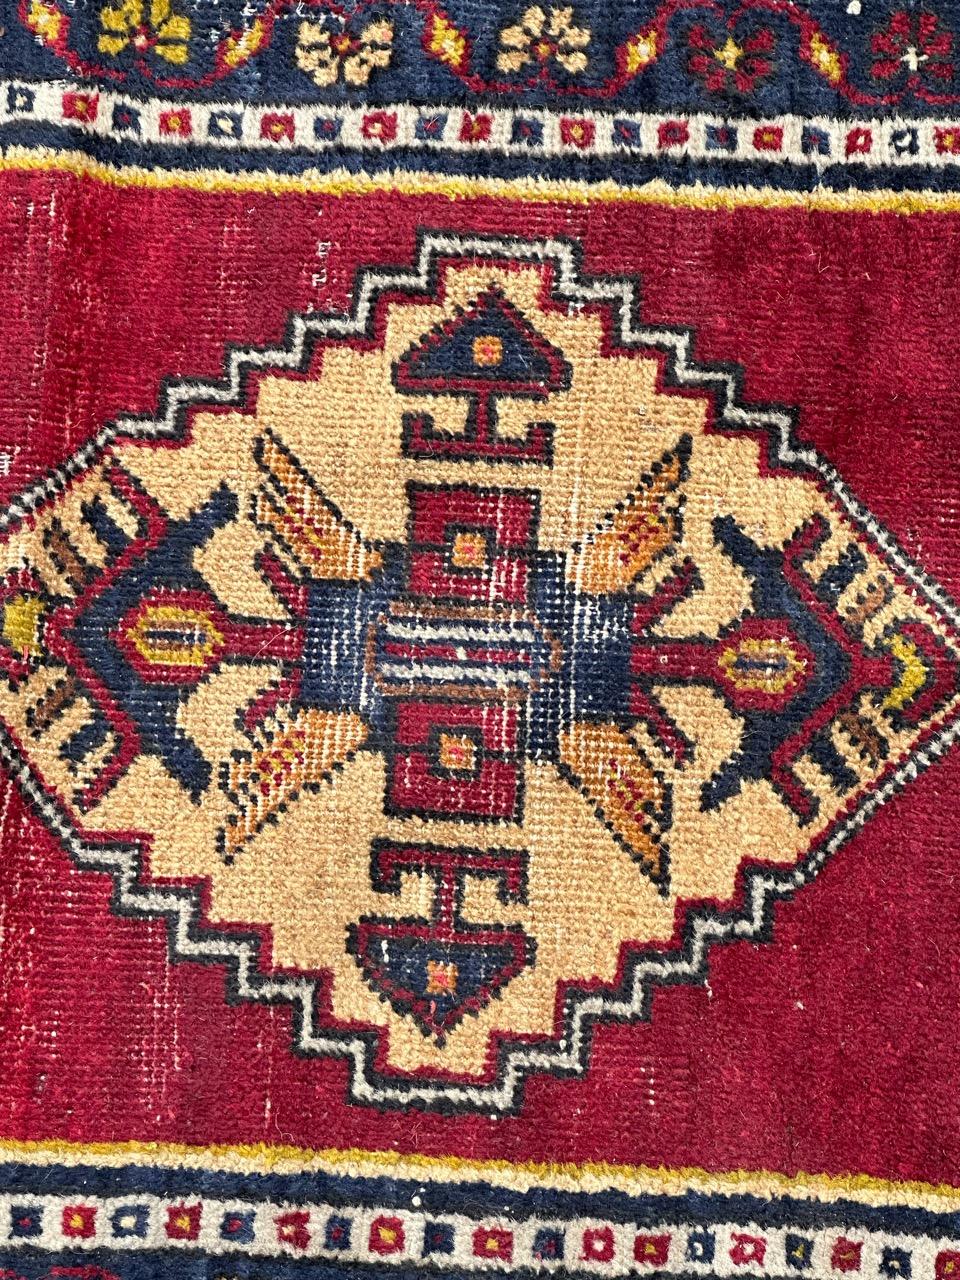 Hübscher türkischer Yastik-Teppich aus der Mitte des Jahrhunderts mit schönem geometrischem Muster und schönen Farben in Rot, Gelb, Orange, Marineblau, Grün und Weiß, komplett handgeknüpft mit Wolle auf Wollbasis. Einige Abnutzungen aufgrund des